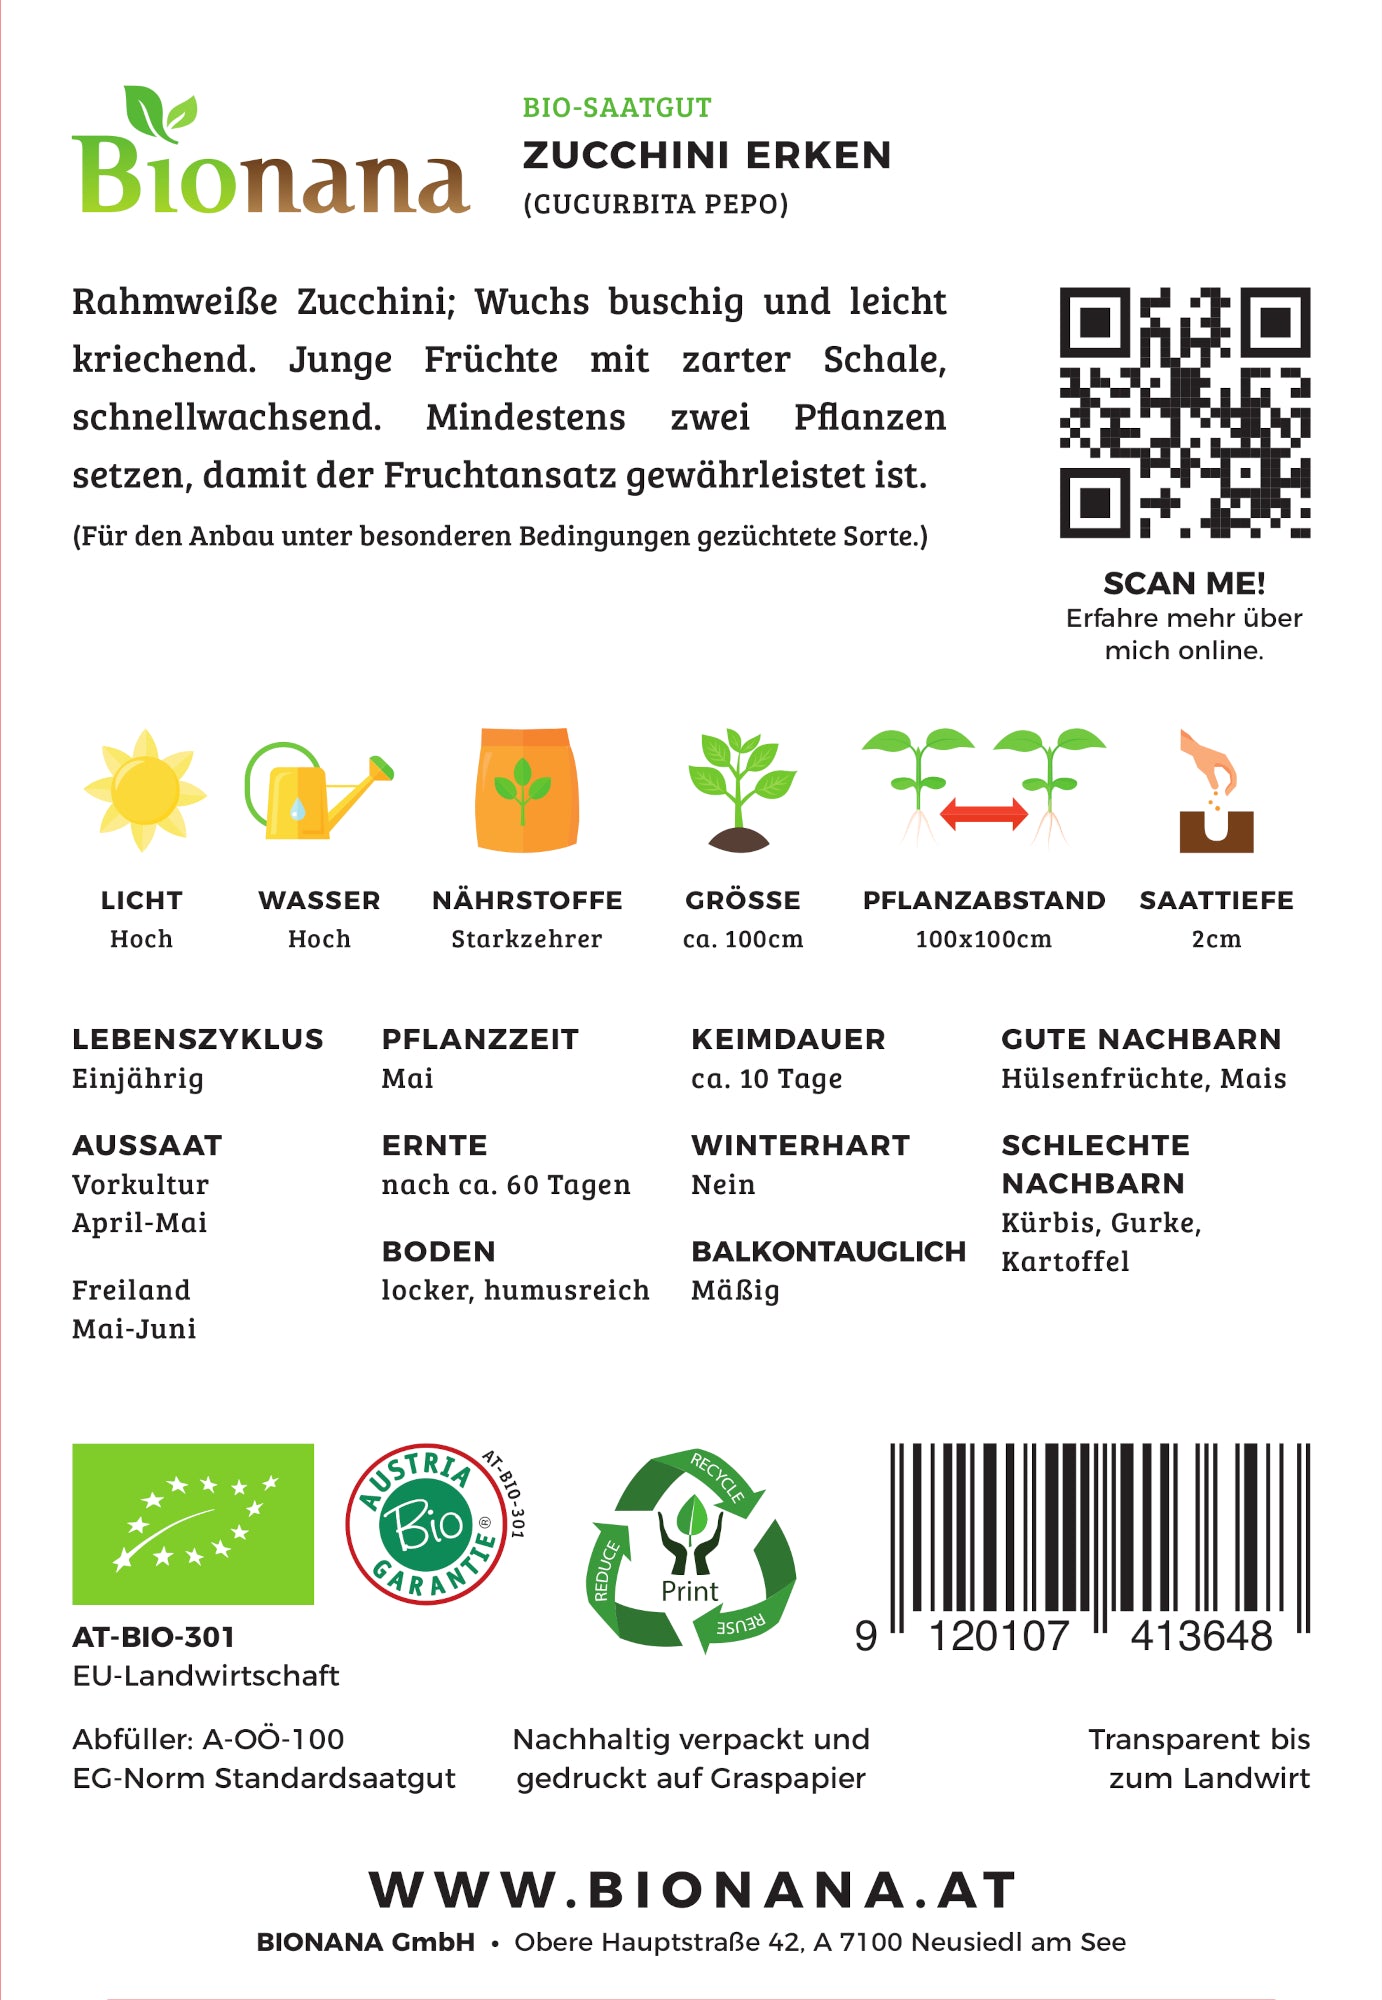 Zucchini Erken | BIO Zucchinisamen von Bionana